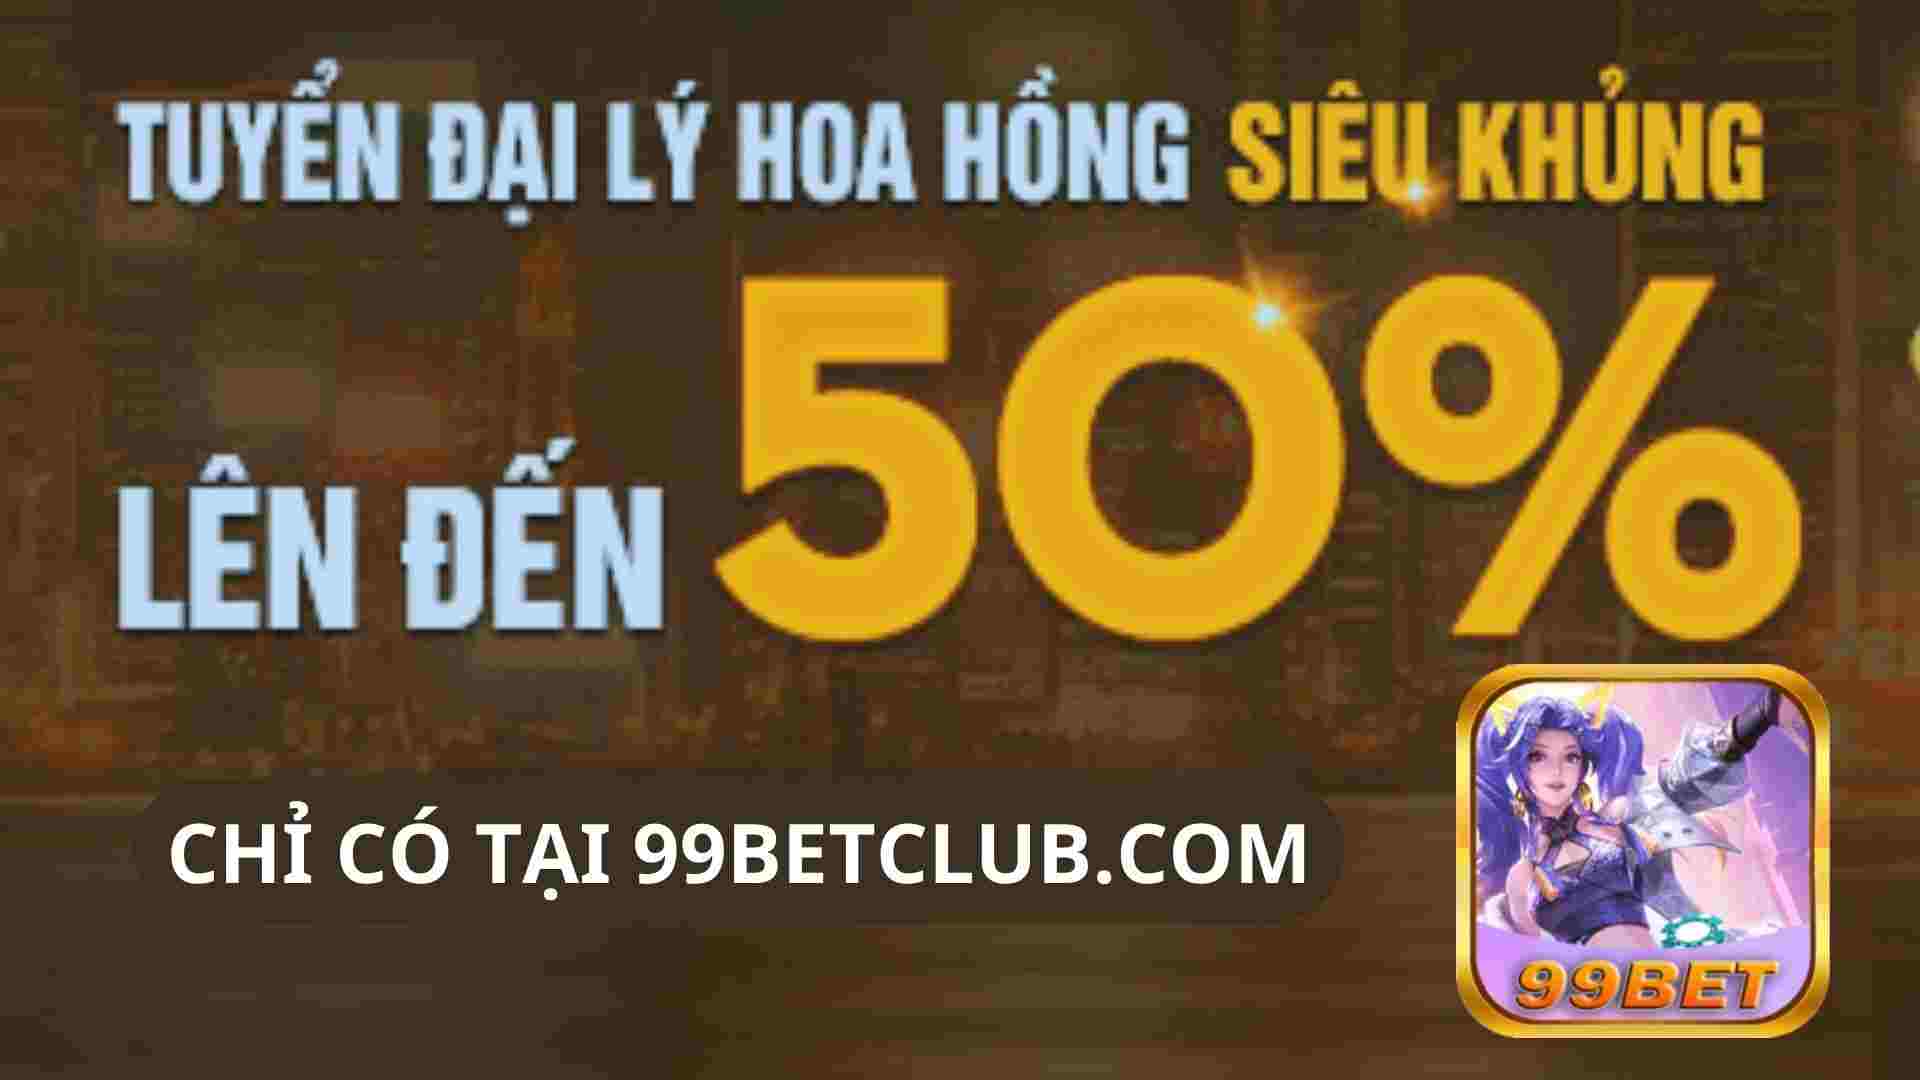 dai-ly-kiem-tien-len-toi-50%-tai-99betclub.jpg